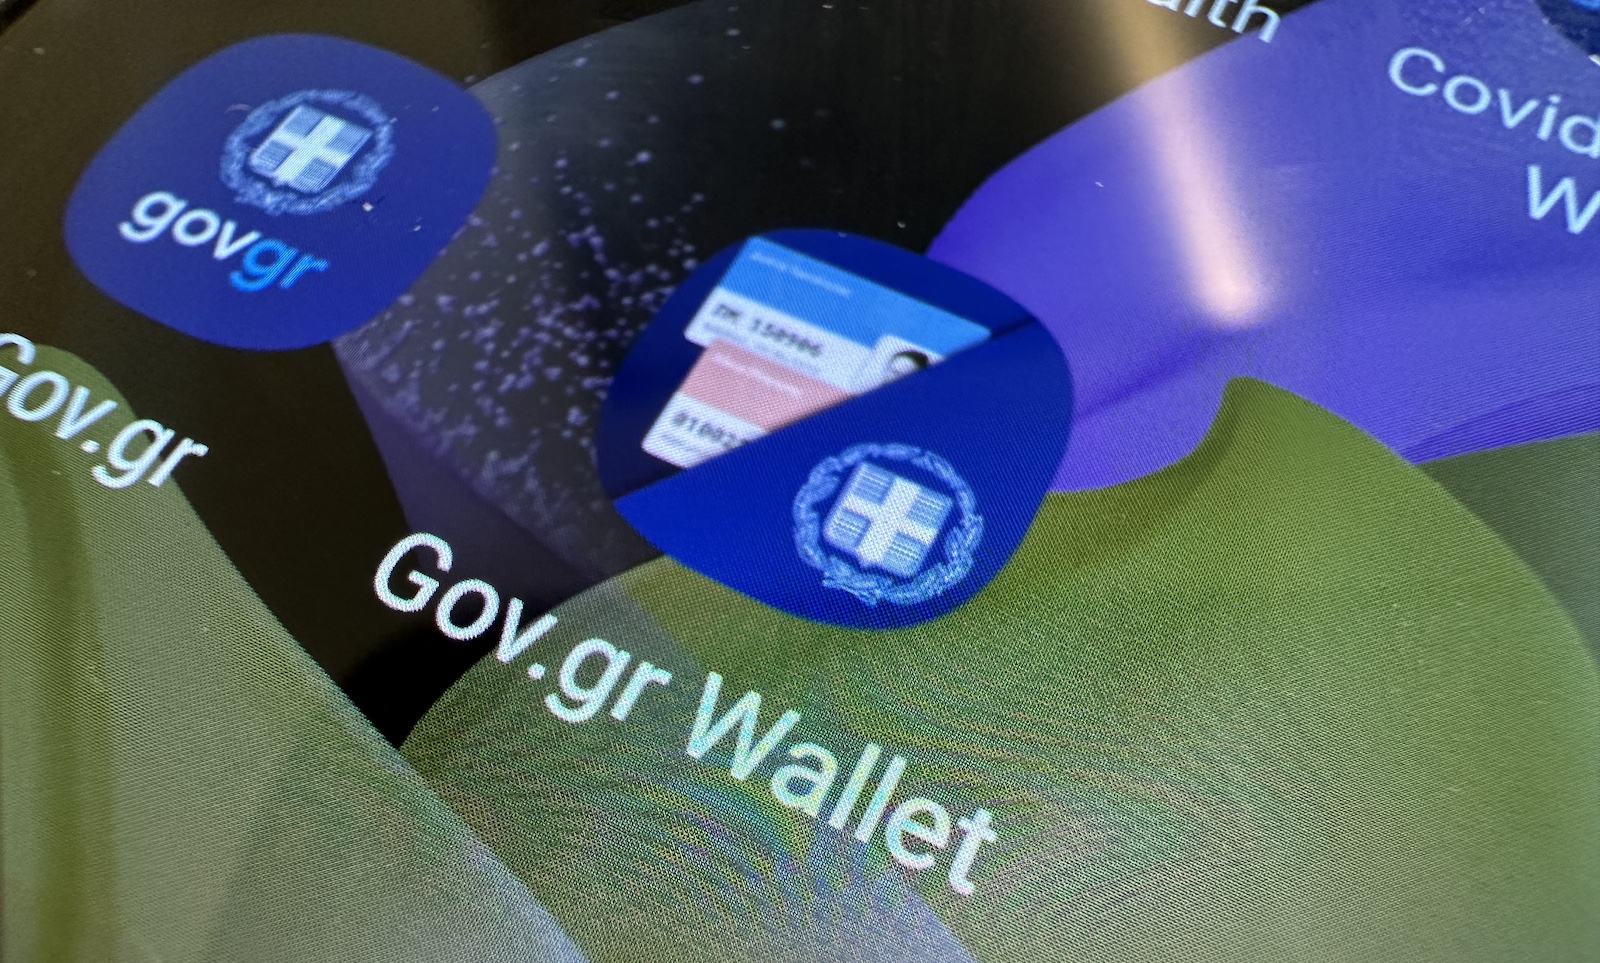 Σε ισχύ από σήμερα το Gov.gr Wallet σε τράπεζες και παρόχους τηλεφωνίας